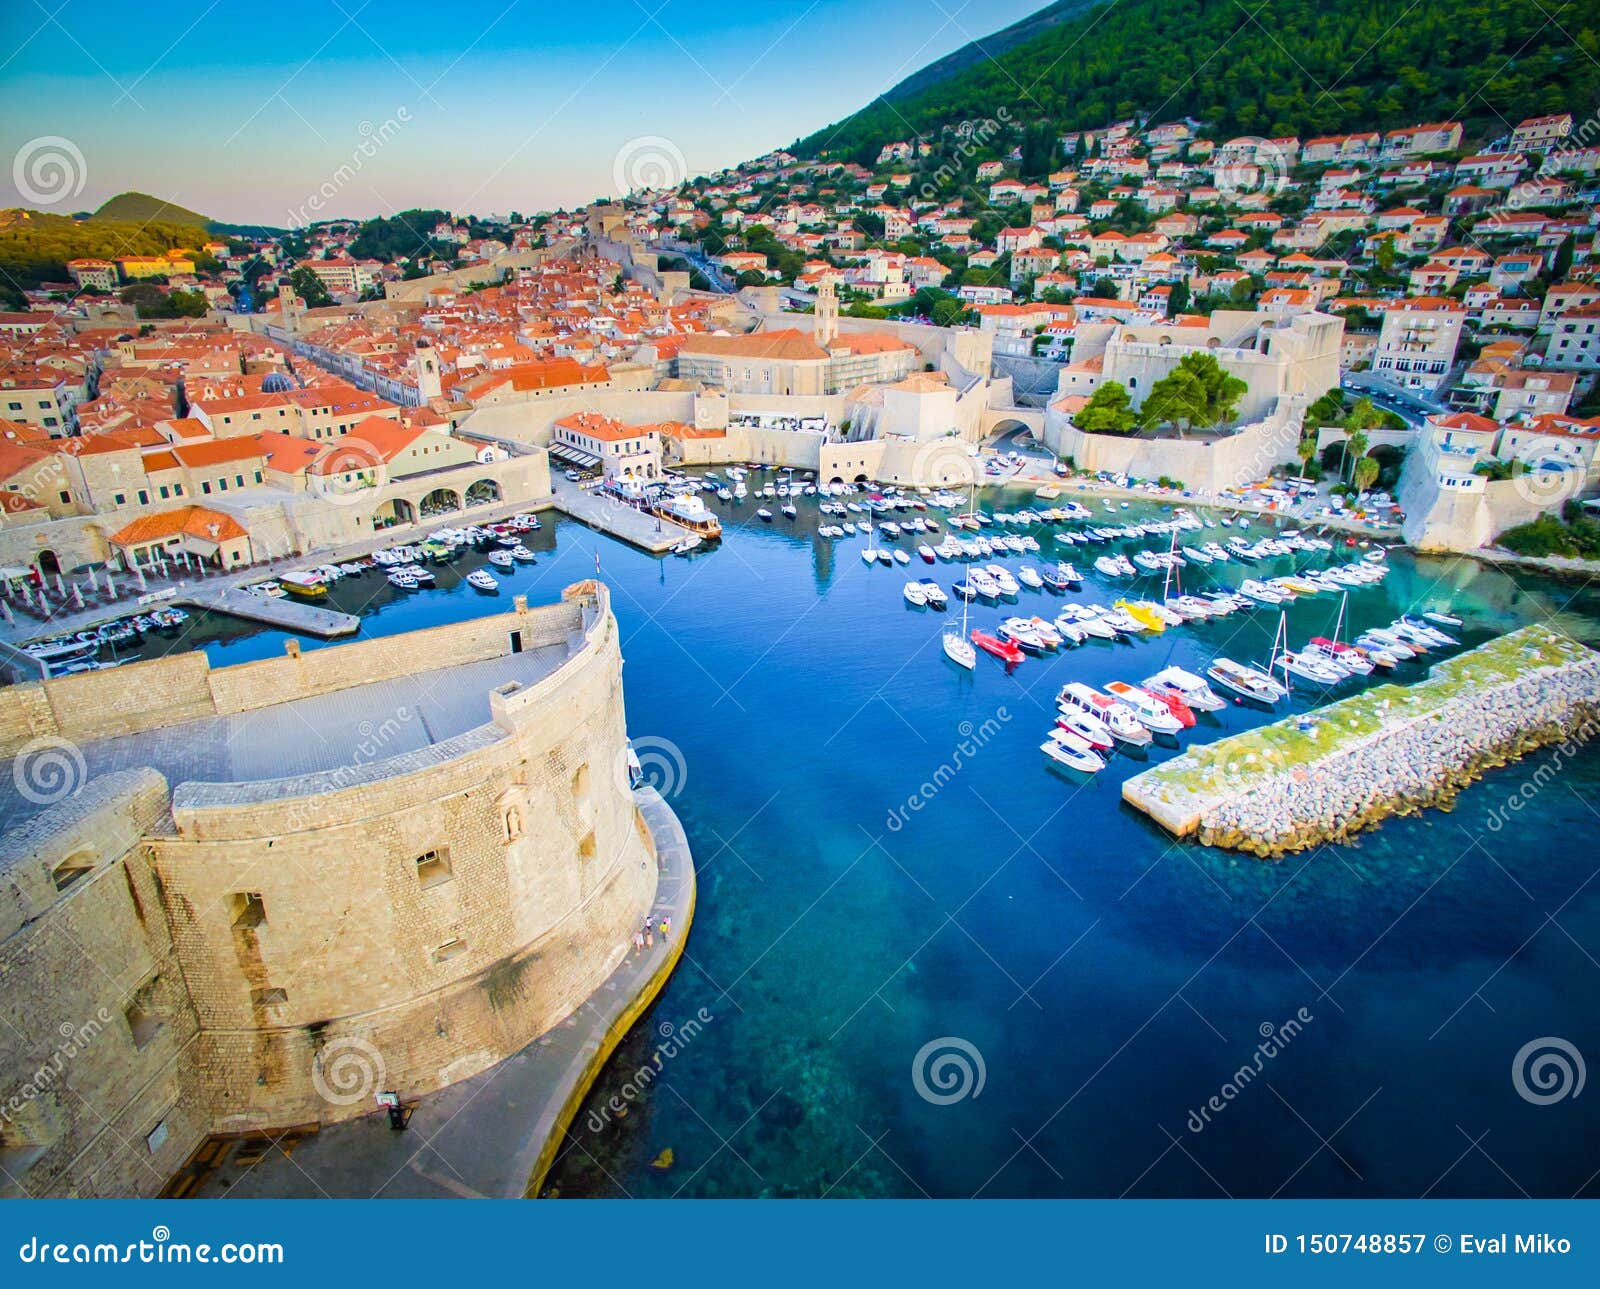 Königlandung und -hafen von oben genanntem Dubrovnik. Drastische Vogelperspektive unten zu historischer Dubrovnik-Stadt in Kroatien